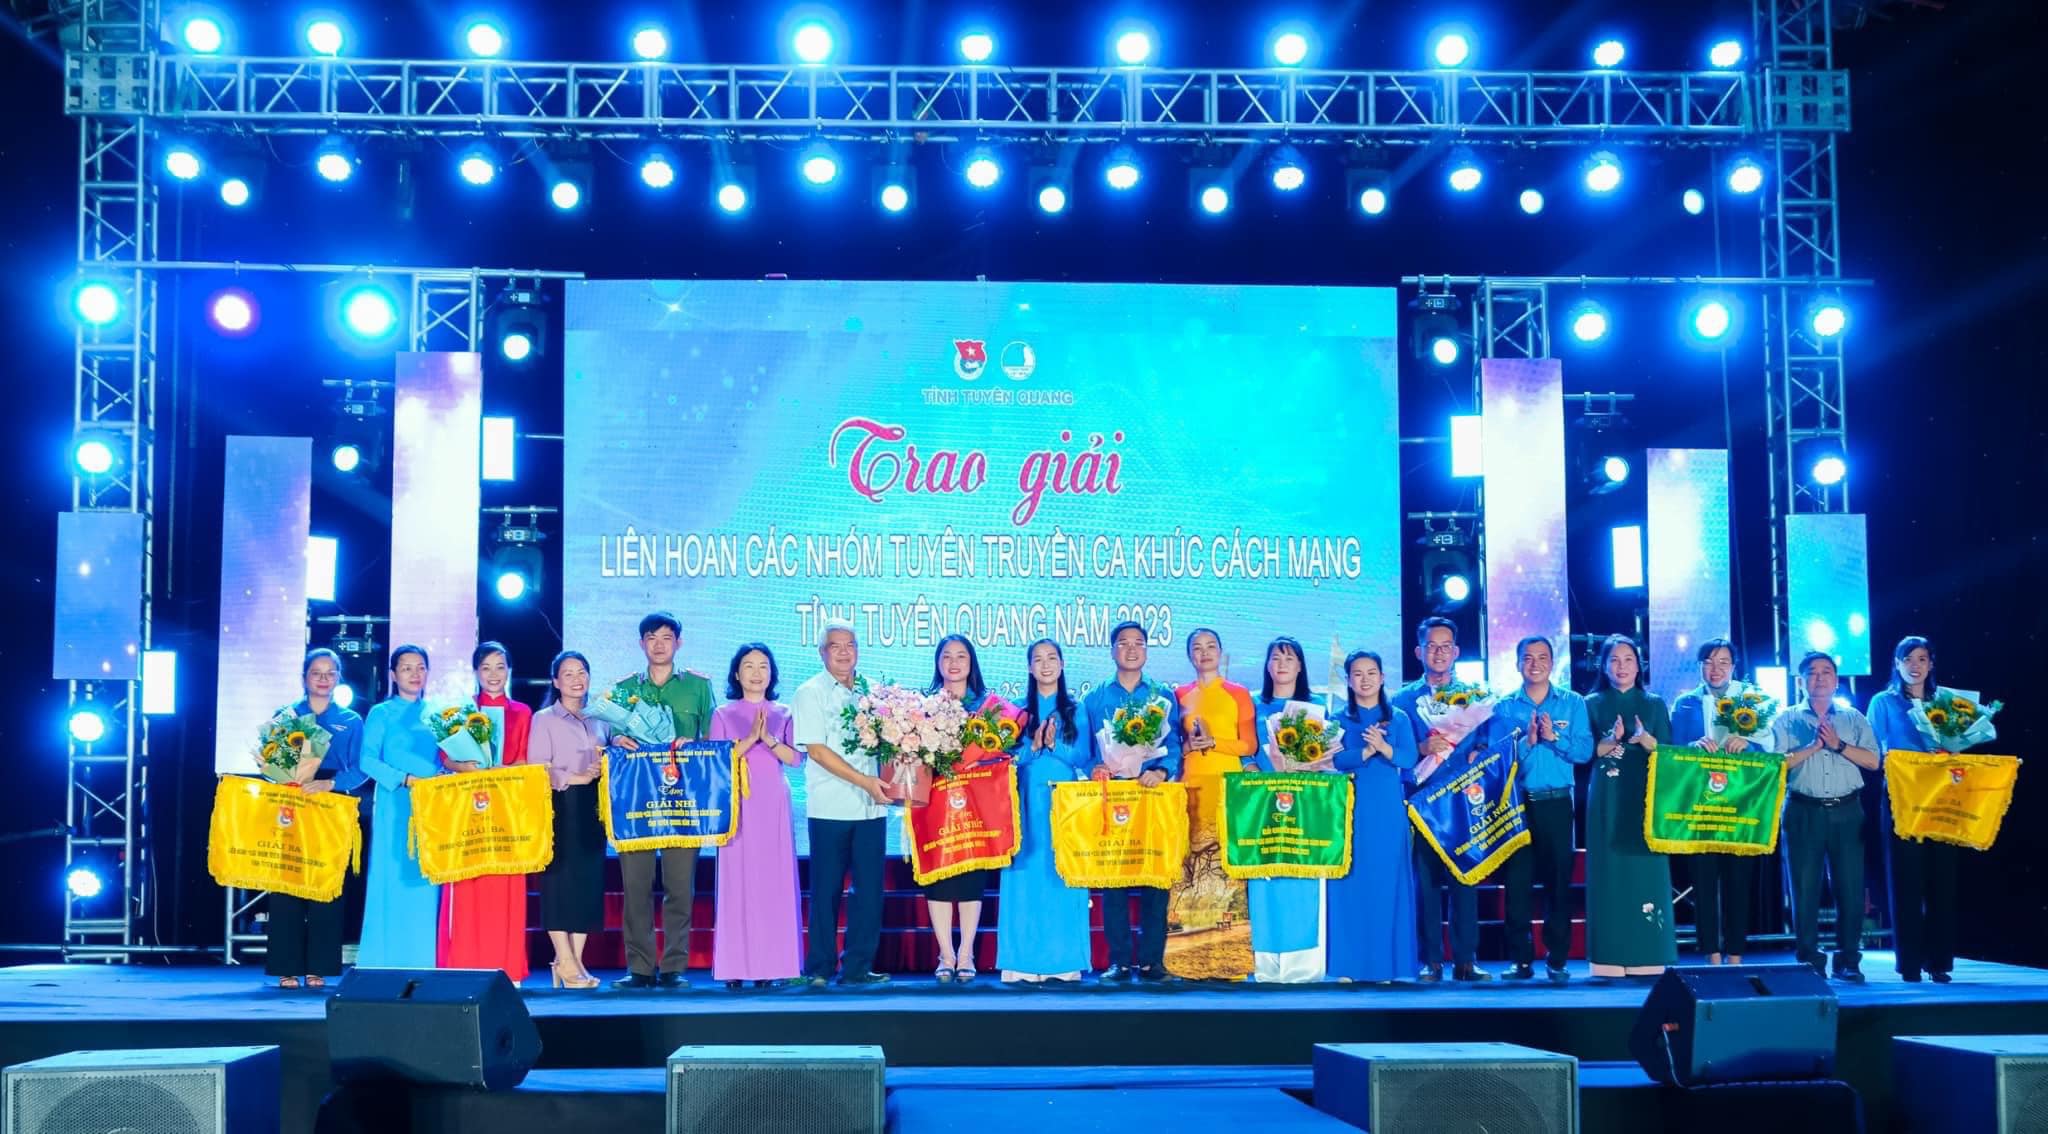 Tuyên Quang: Cảm xúc sâu lắng tại Liên hoan các nhóm tuyên truyền ca khúc cách mạng tỉnh Tuyên Quang năm 2023